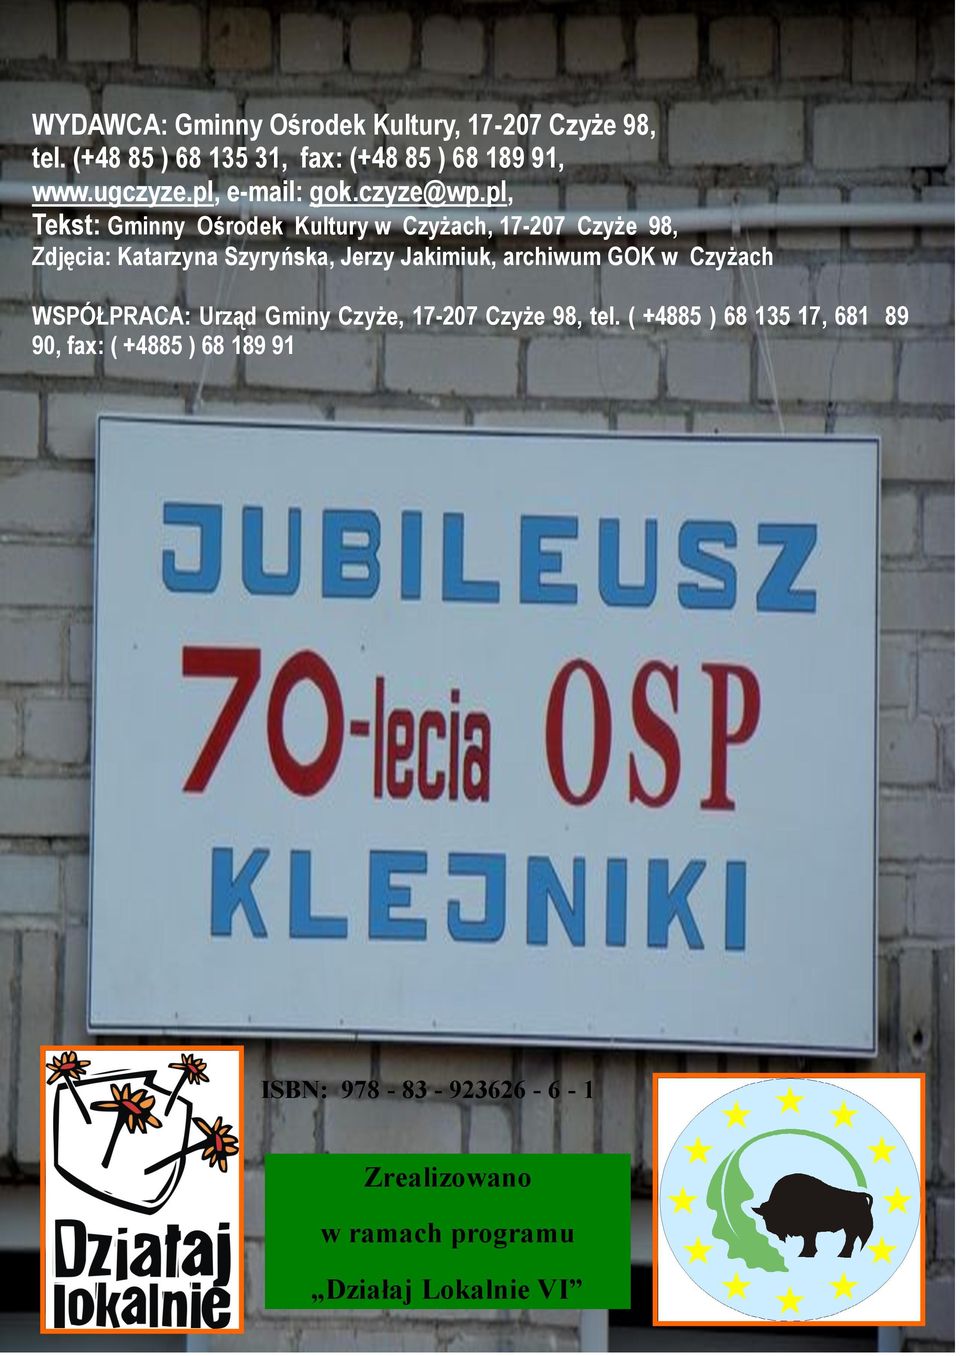 pl, Tekst: Gminny Ośrodek Kultury w Czyżach, 17-207 Czyże 98, Zdjęcia: Katarzyna Szyryńska, Jerzy Jakimiuk,